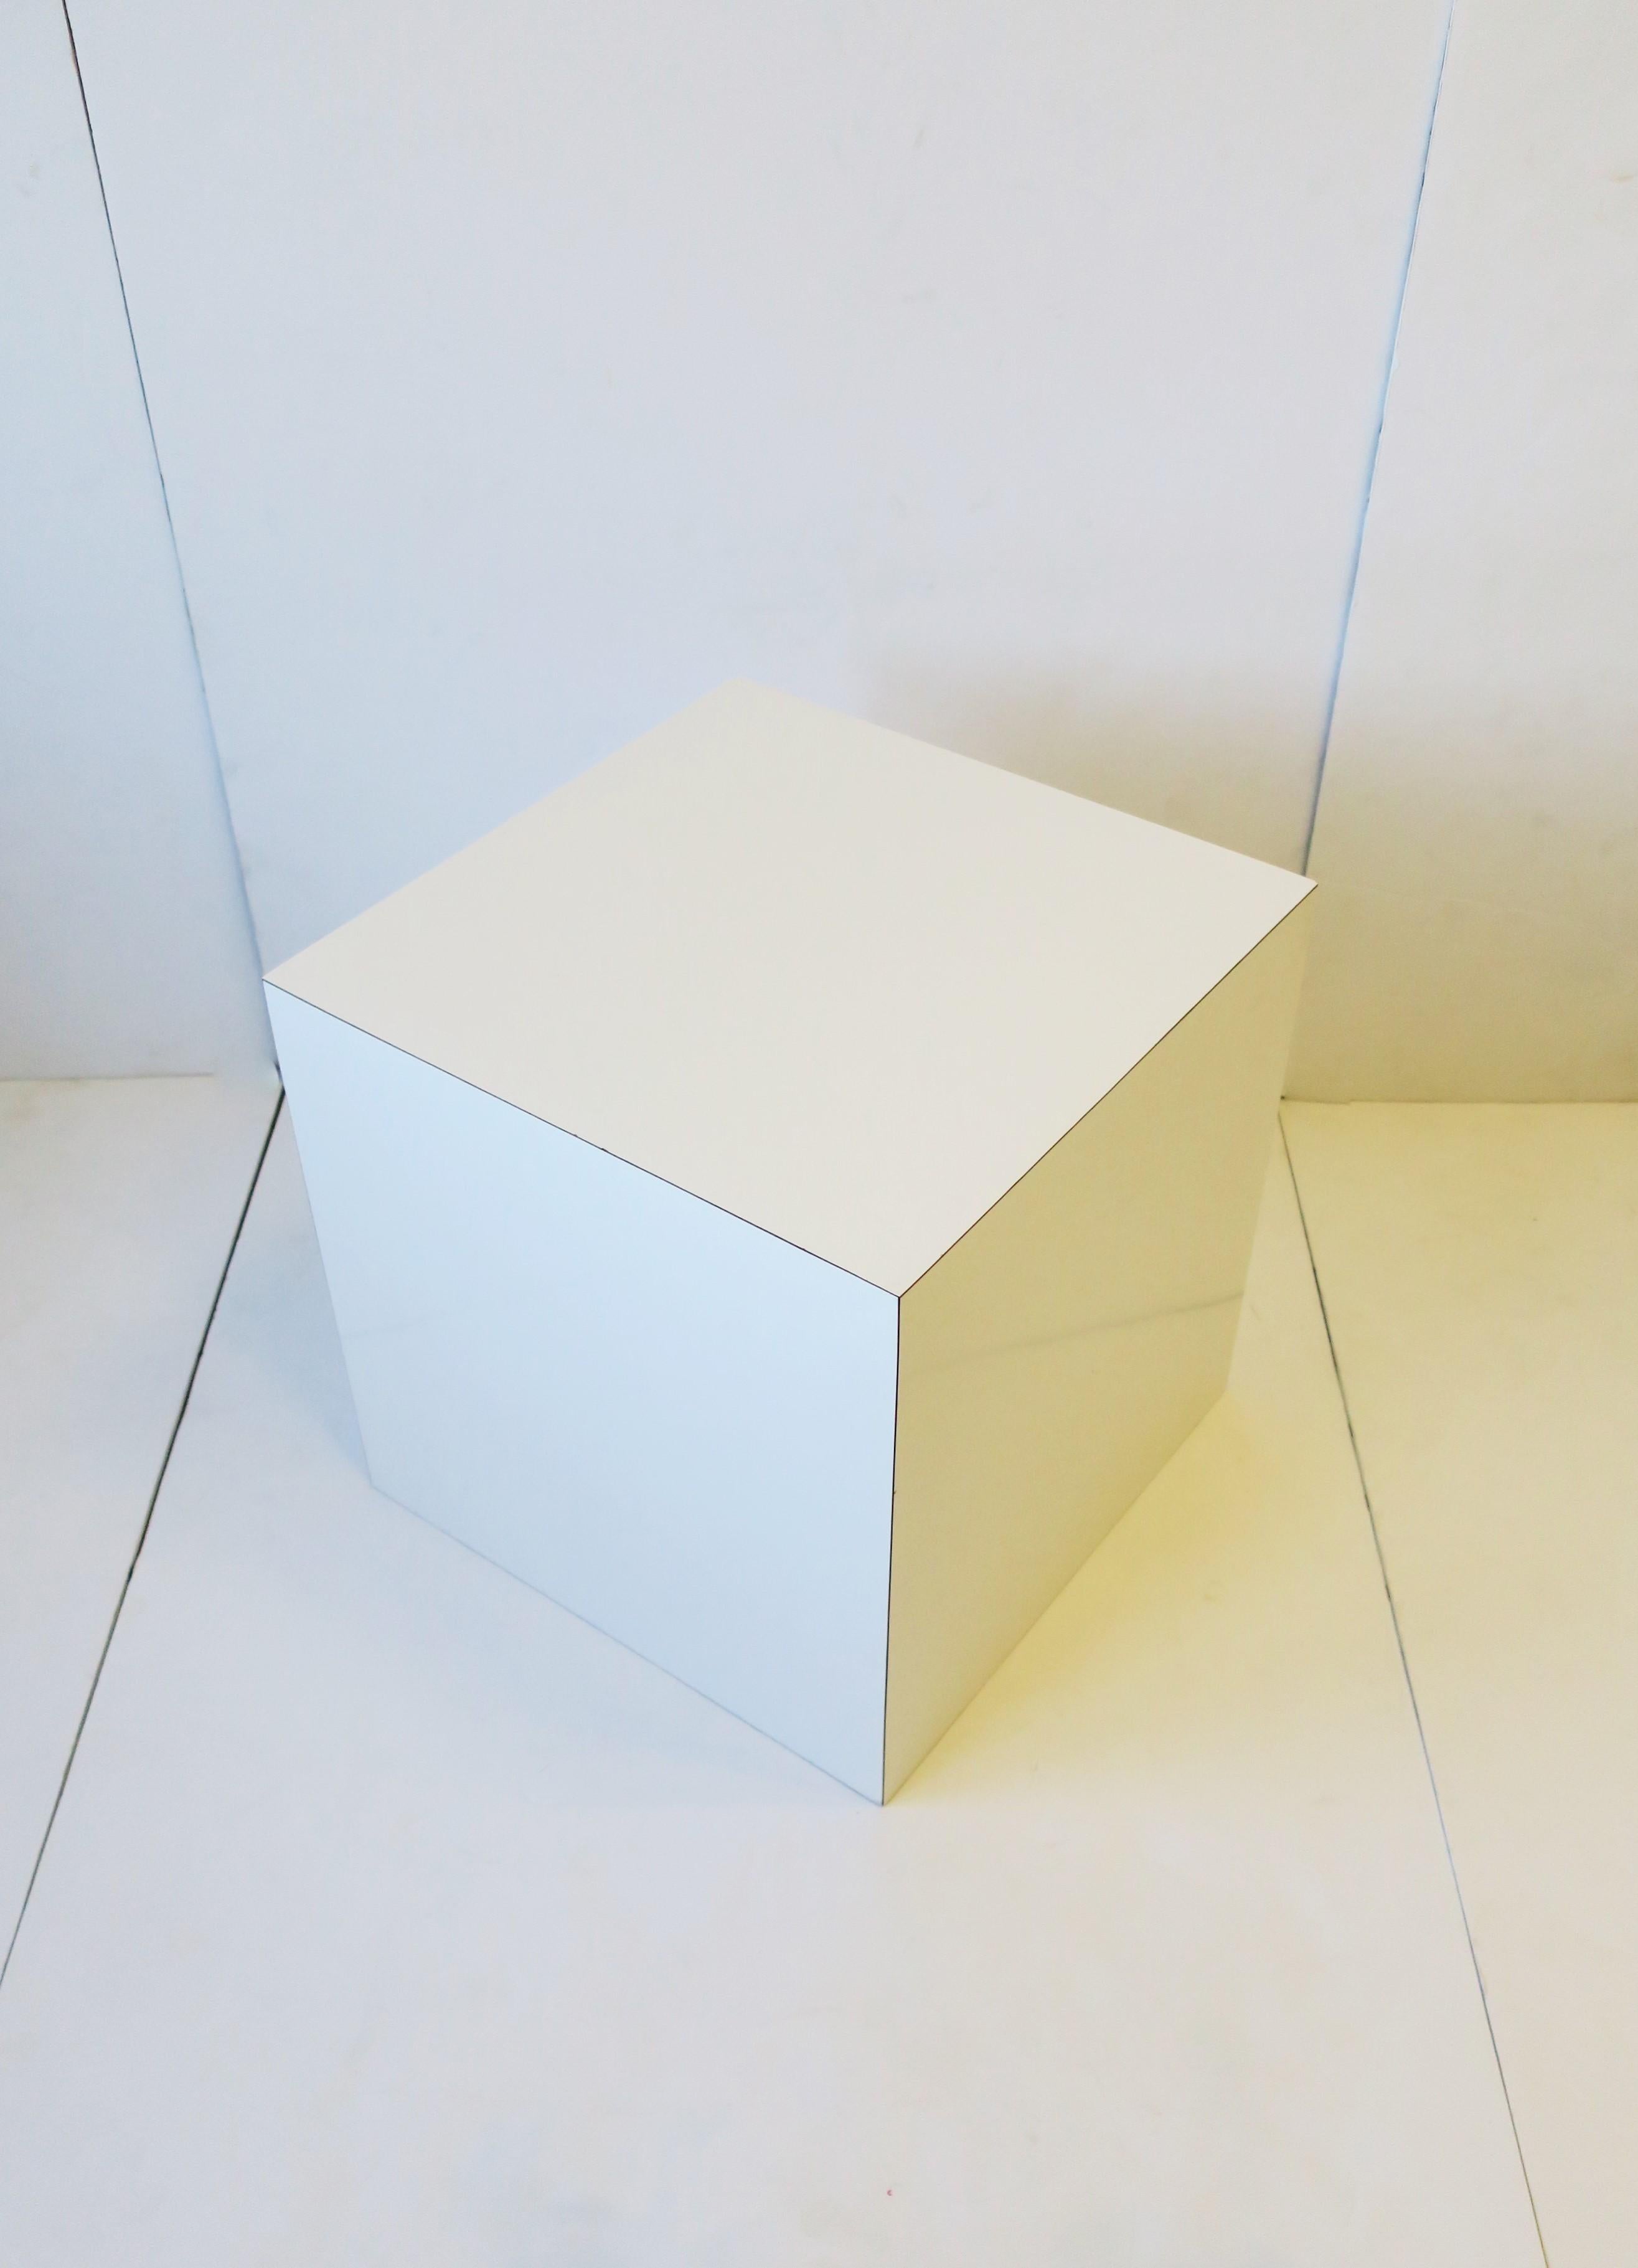 Guéridon ou table d'appoint cubique en placage de stratifié blanc brillant, période moderne/postmoderne des années 70, vers la fin du XXe siècle, dans les années 70 ou plus tard. Une pièce idéale pour la sculpture, l'art, l'exposition, ou comme